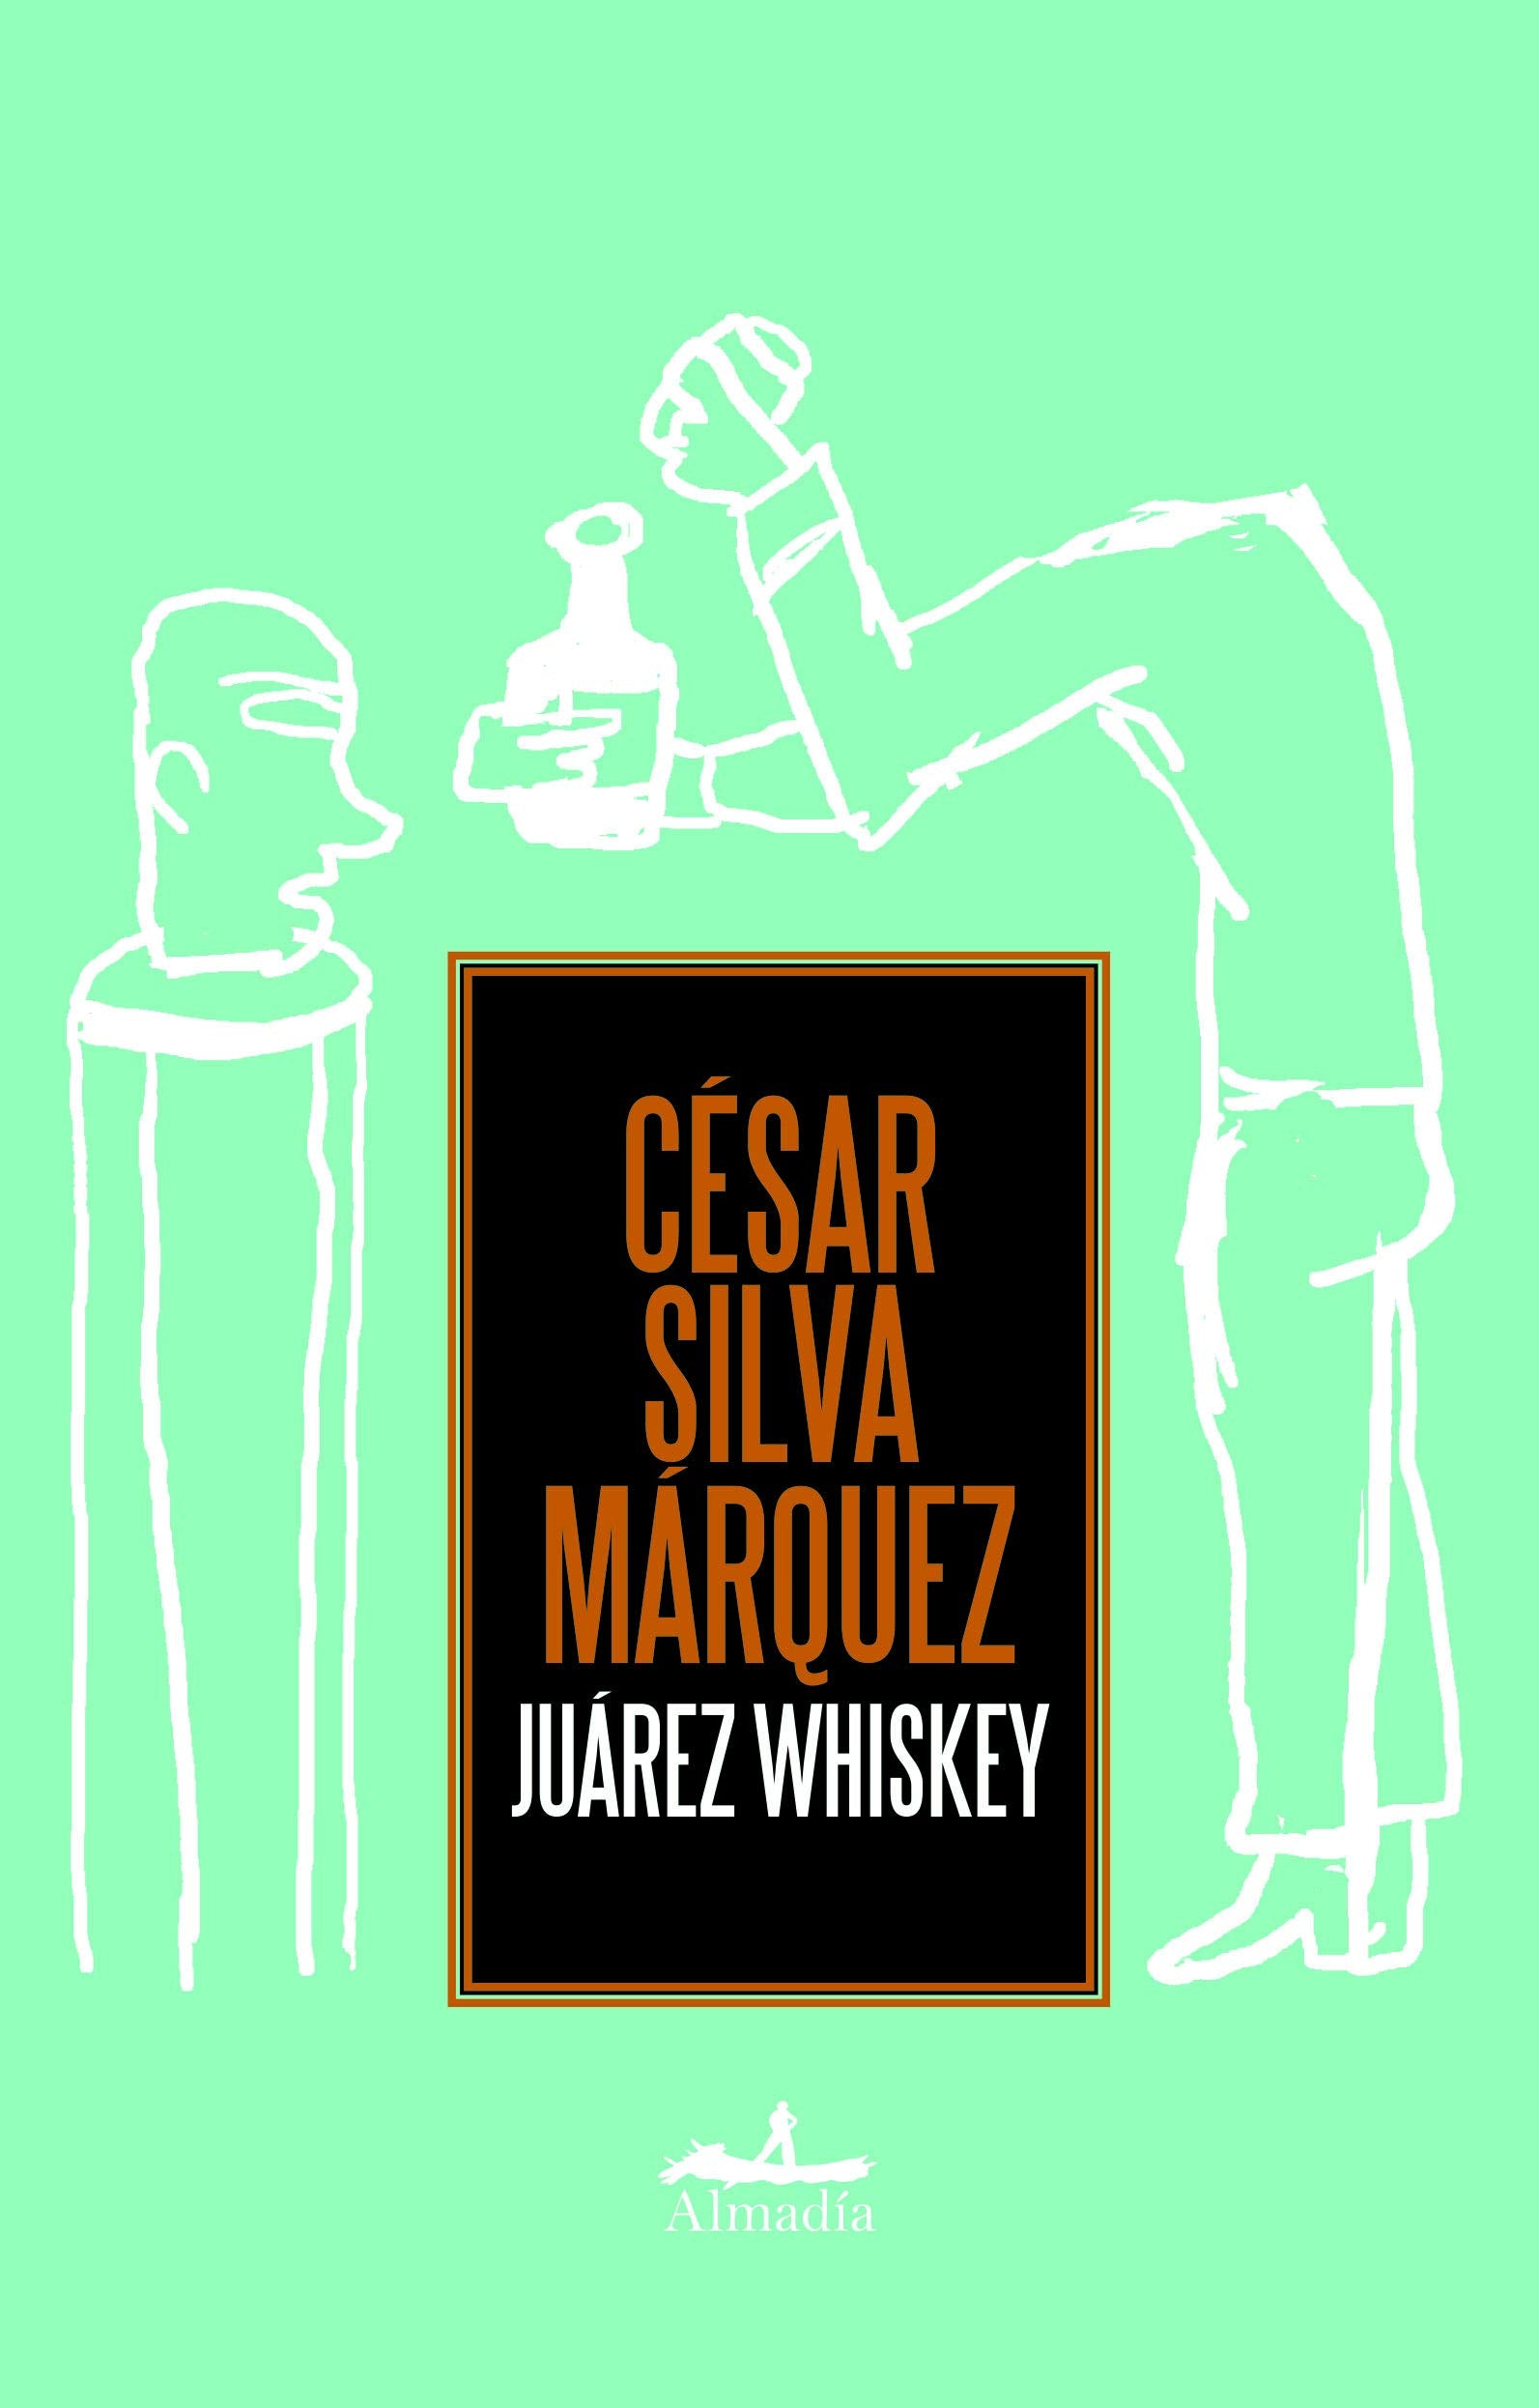 Juarez Whiskey